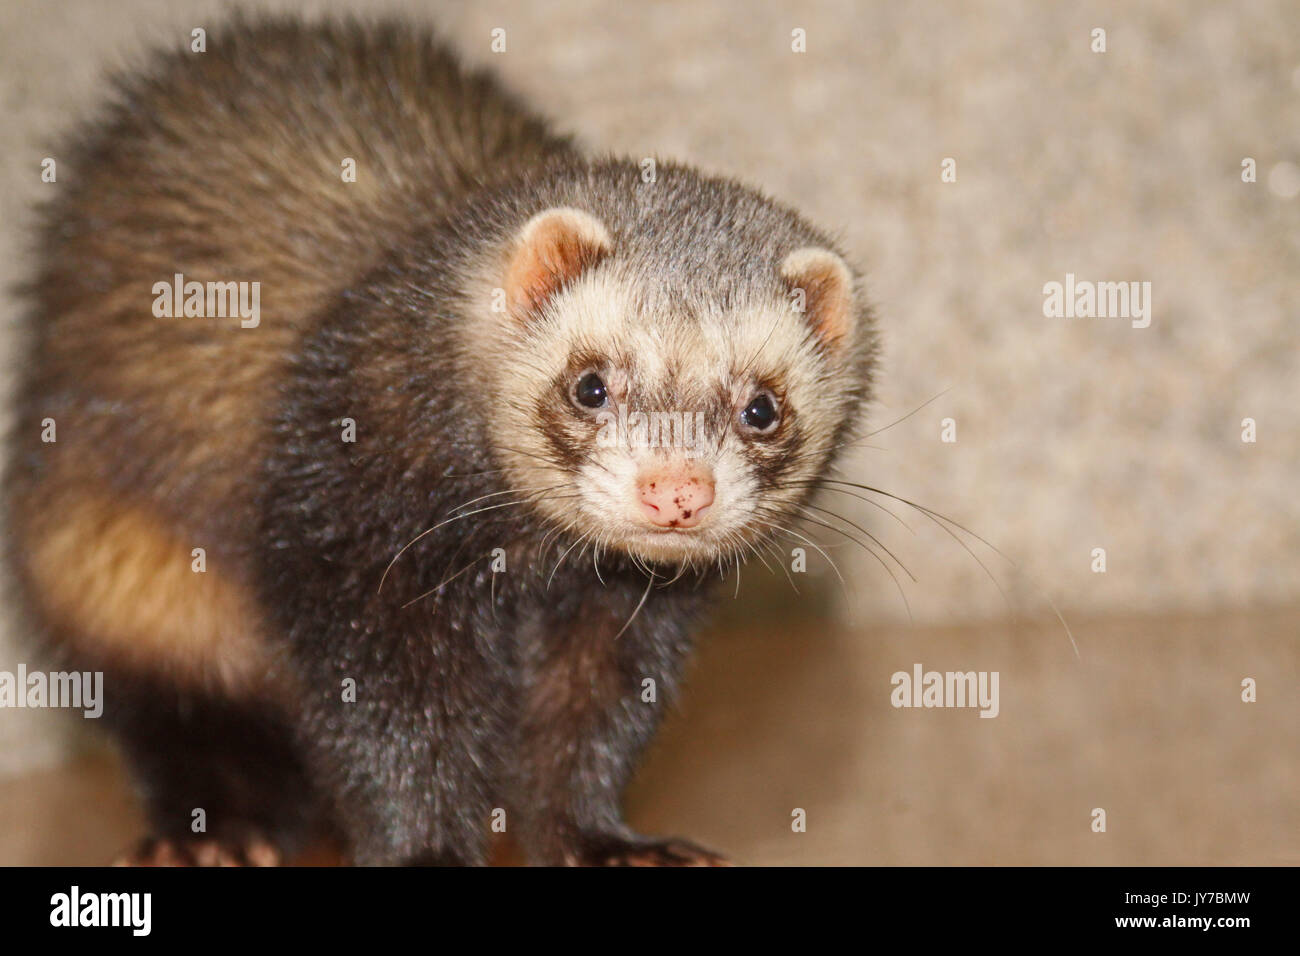 exotic ferret pet portrait in studio Stock Photo